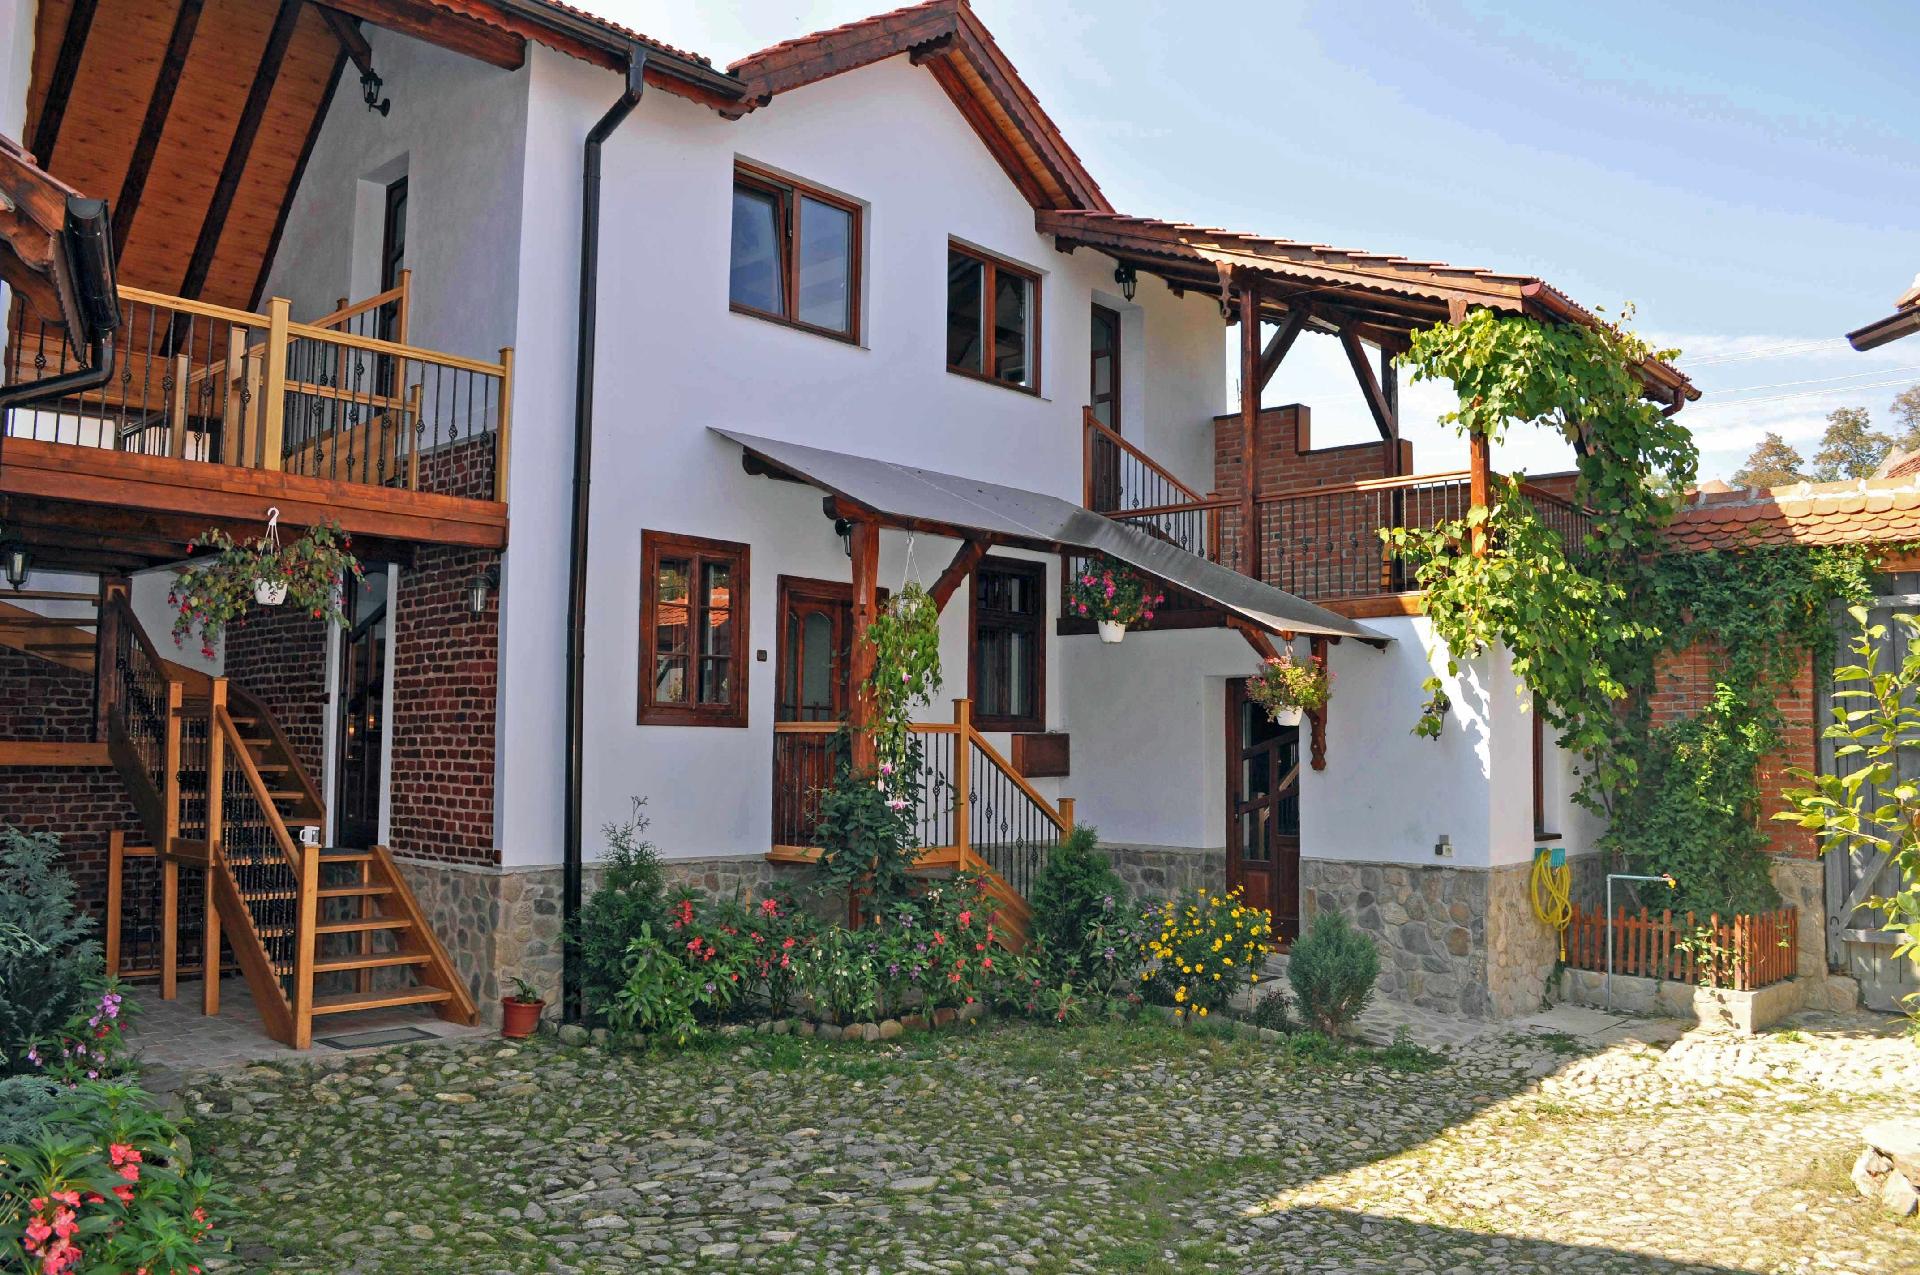 Casa Pelu renoviertes Bauernhaus in urigem Hirtendorf am Fuße der Karpaten Siebenbürgens